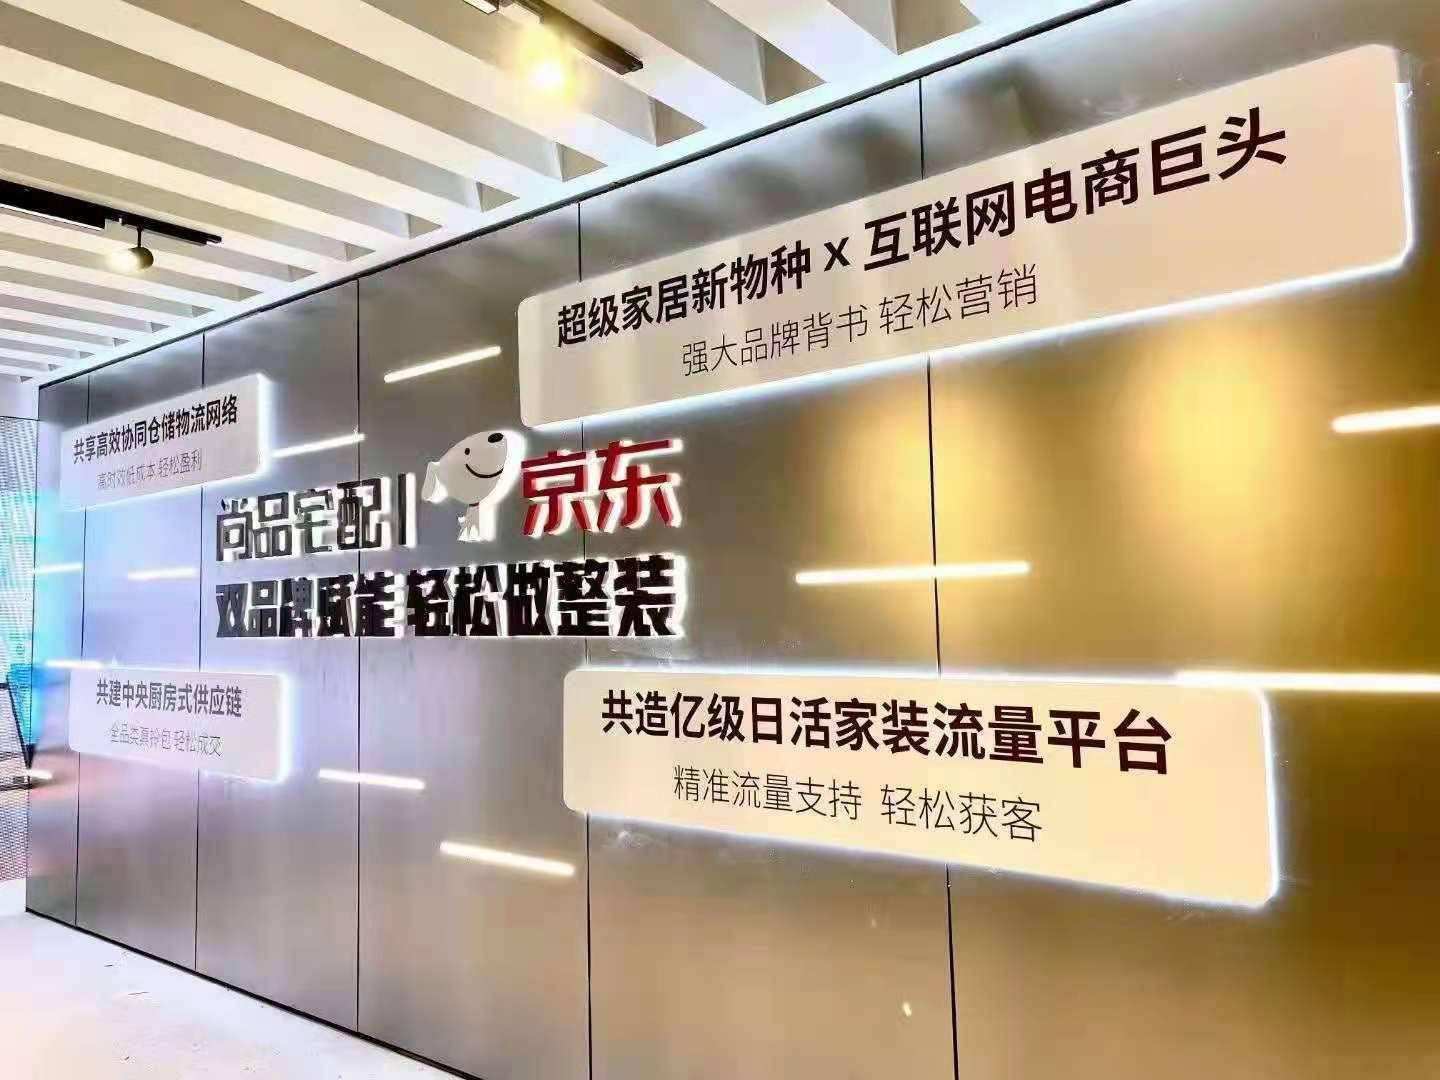 尚品宅配與北京京東終止定增，擬重新申報